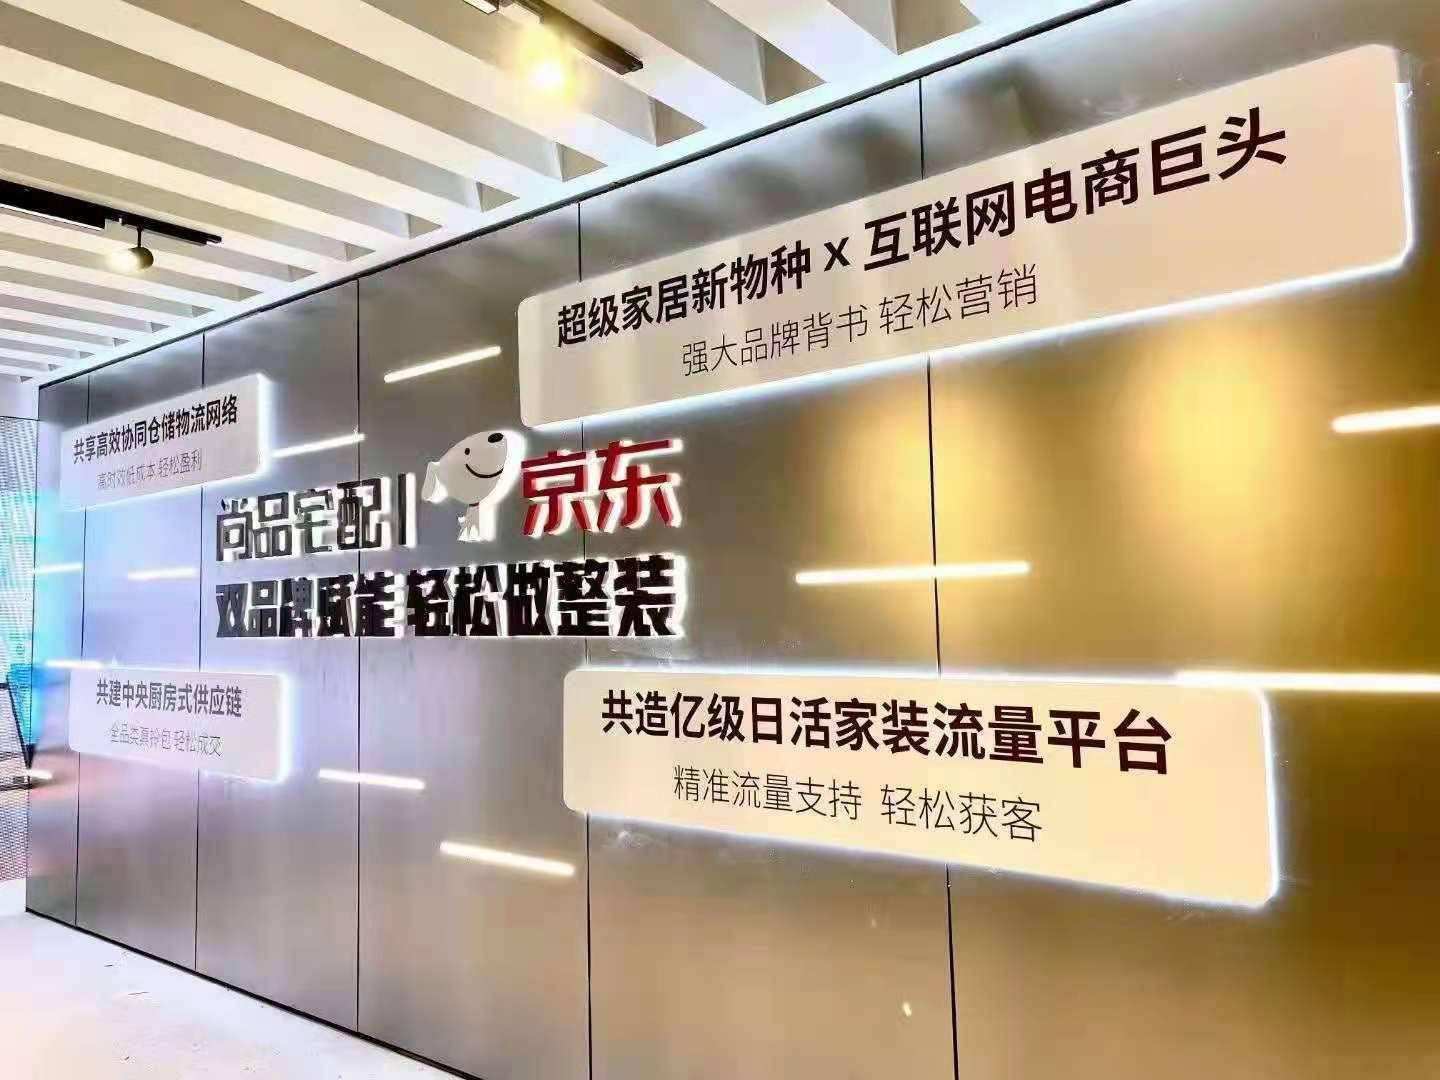 尚品宅配與北京京東終止定增，擬重新申報